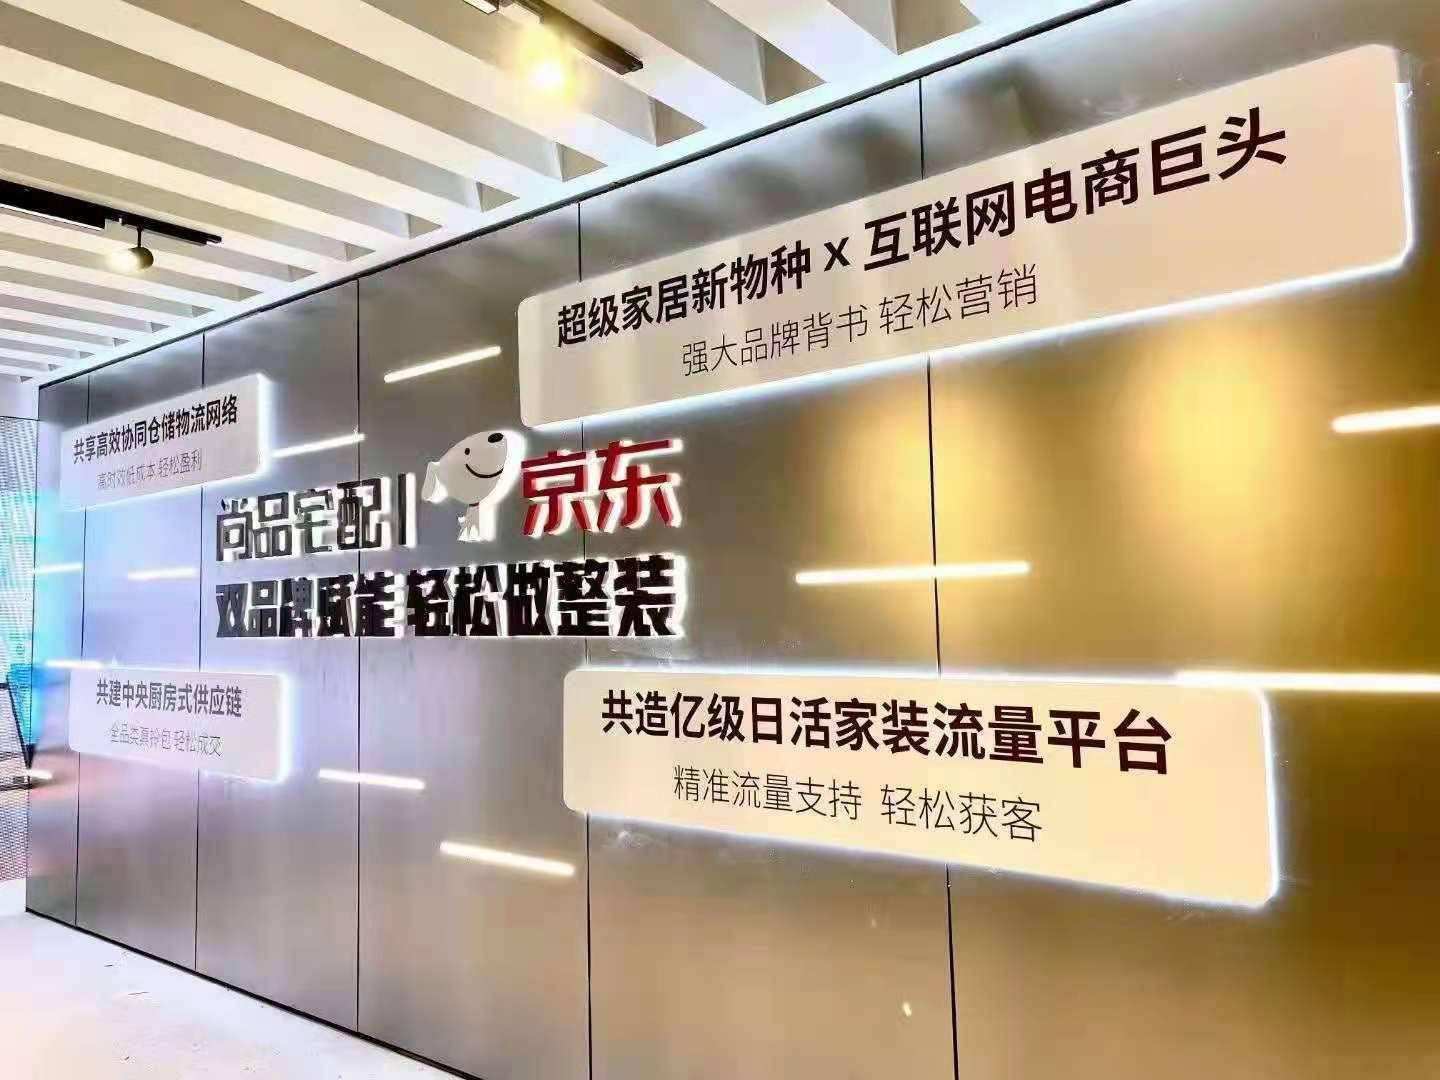 尚品宅配與北京京東終止定增，擬重新申報